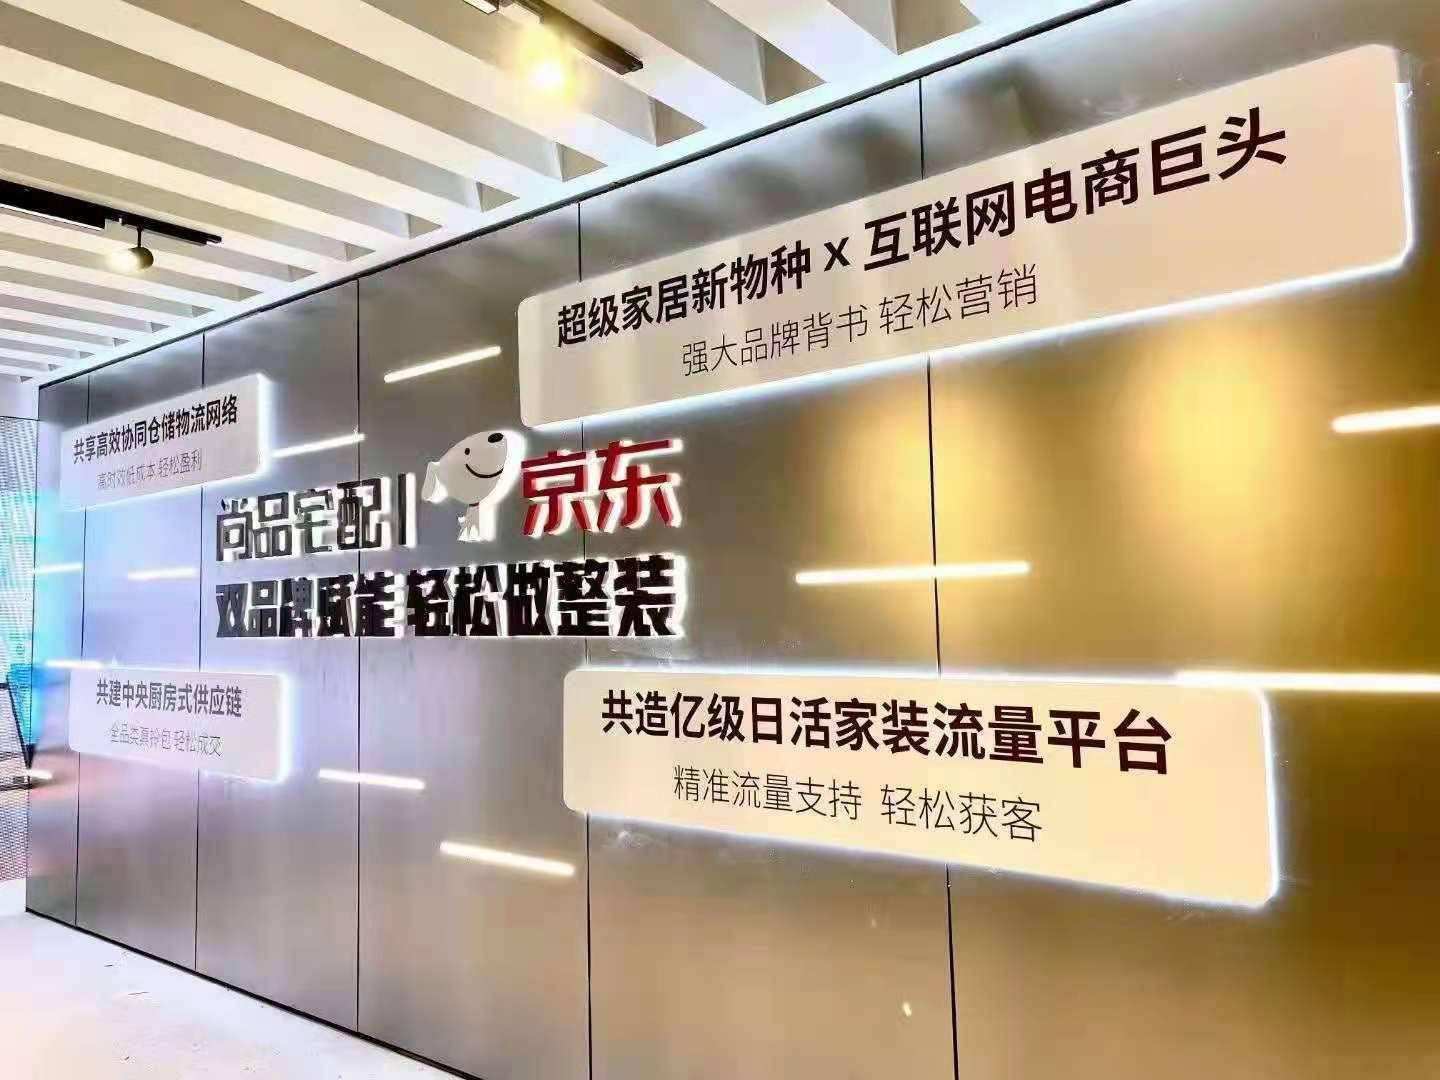 尚品宅配與北京京東終止定增，擬重新申報